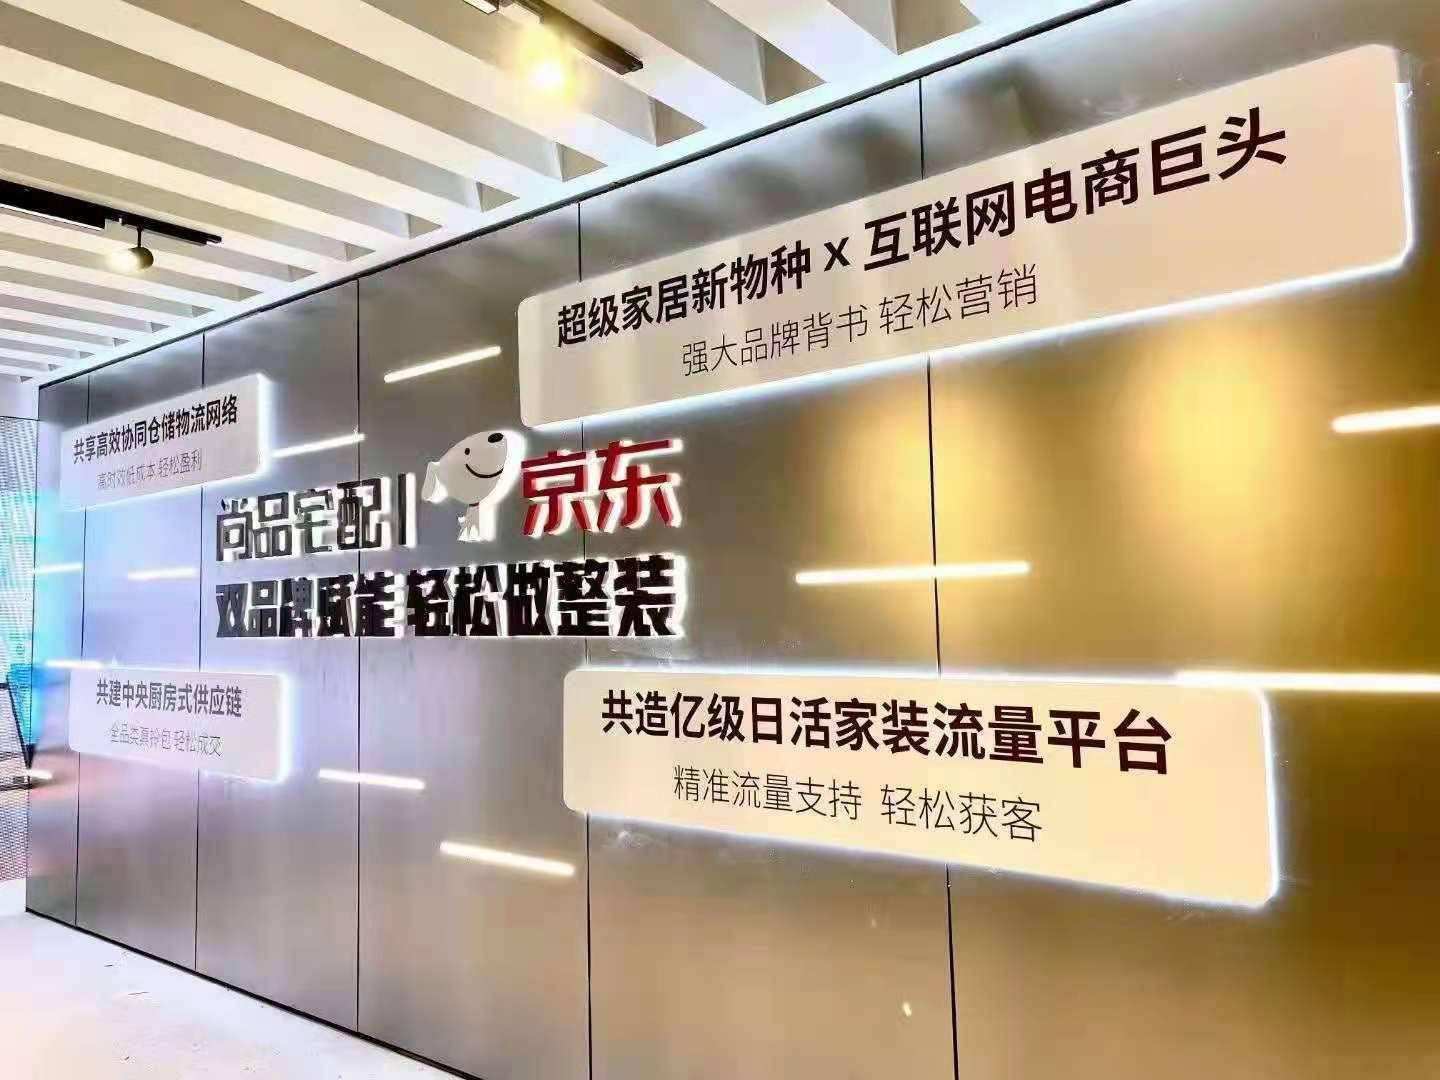 尚品宅配與北京京東終止定增，擬重新申報